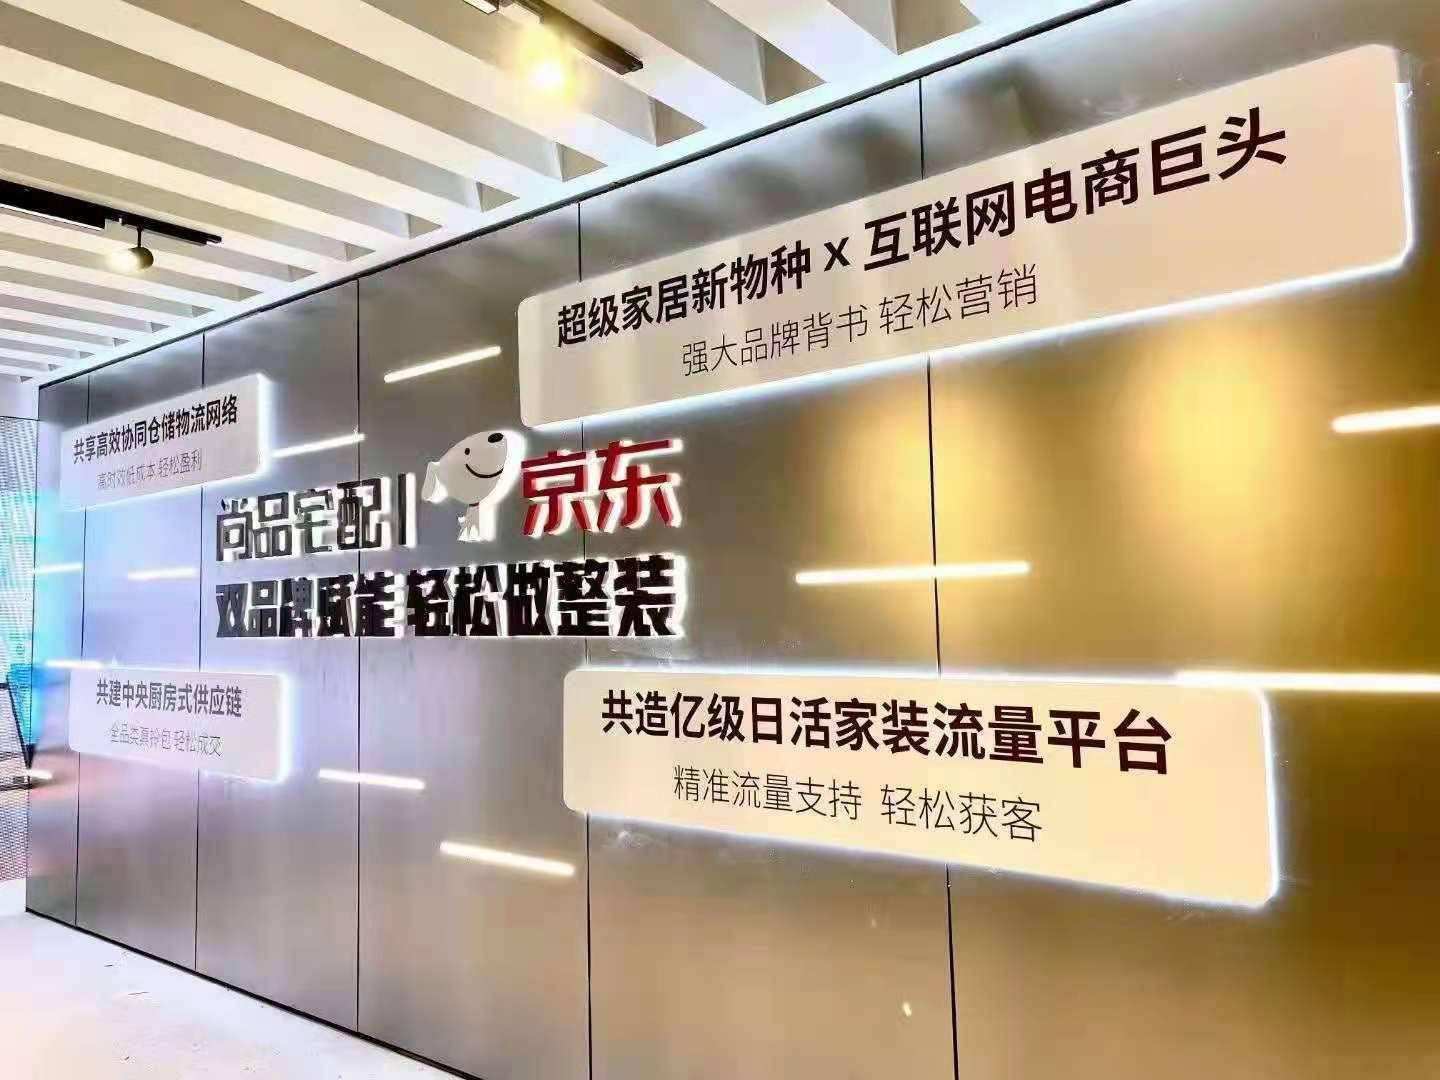 尚品宅配與北京京東終止定增，擬重新申報